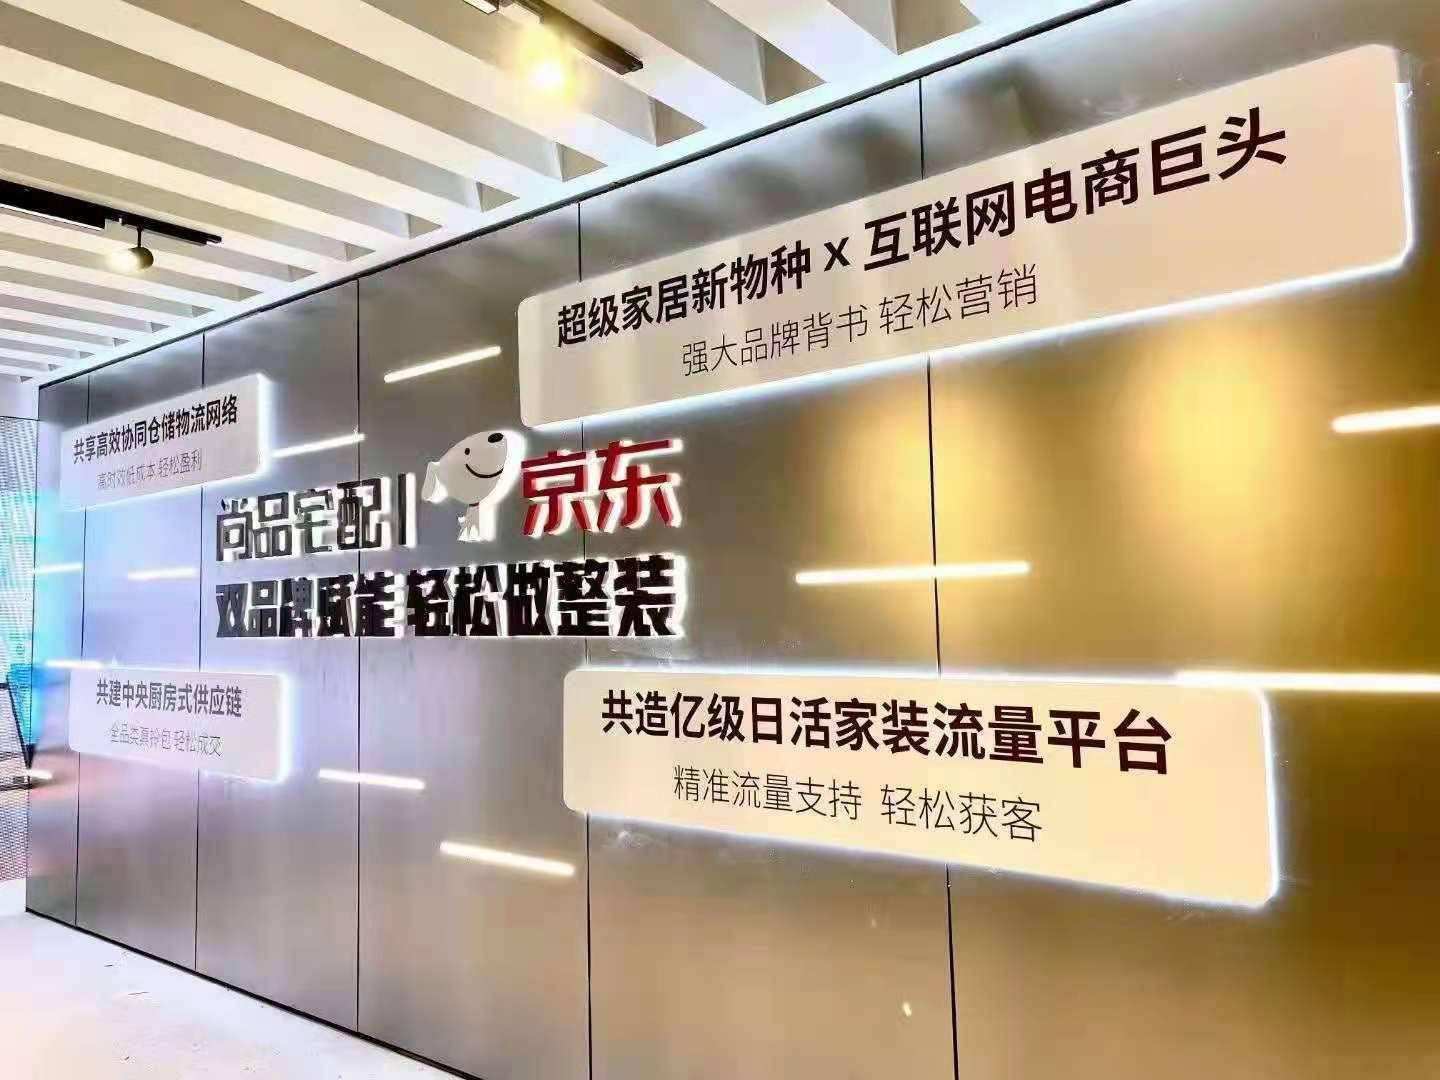 尚品宅配與北京京東終止定增，擬重新申報